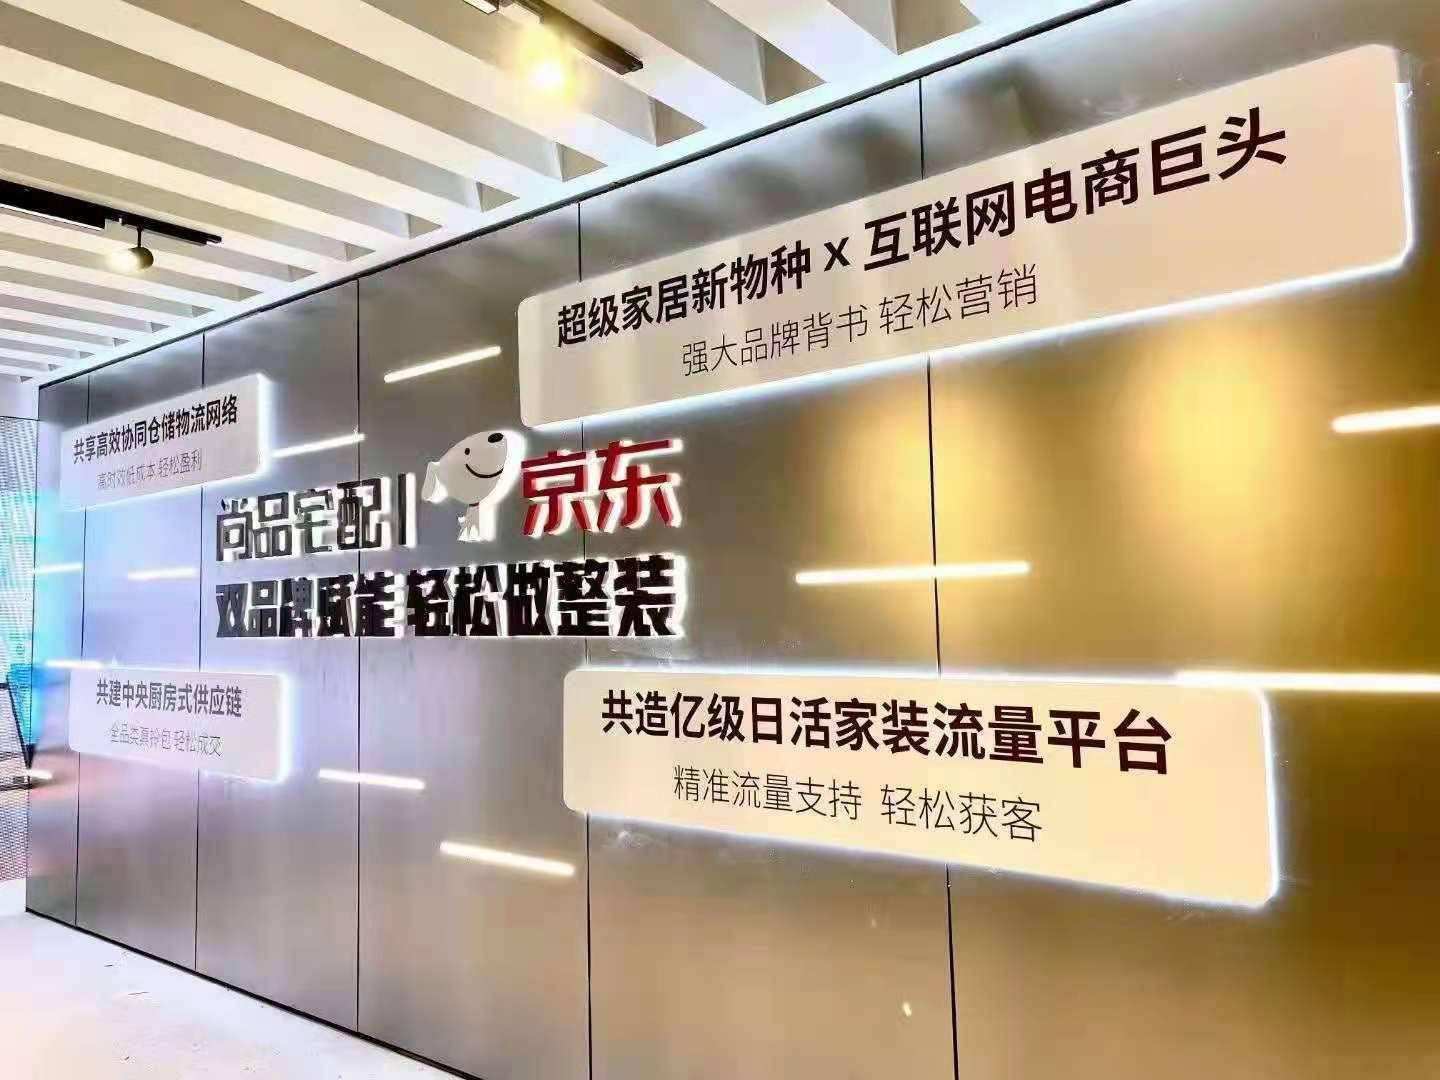 尚品宅配與北京京東終止定增，擬重新申報